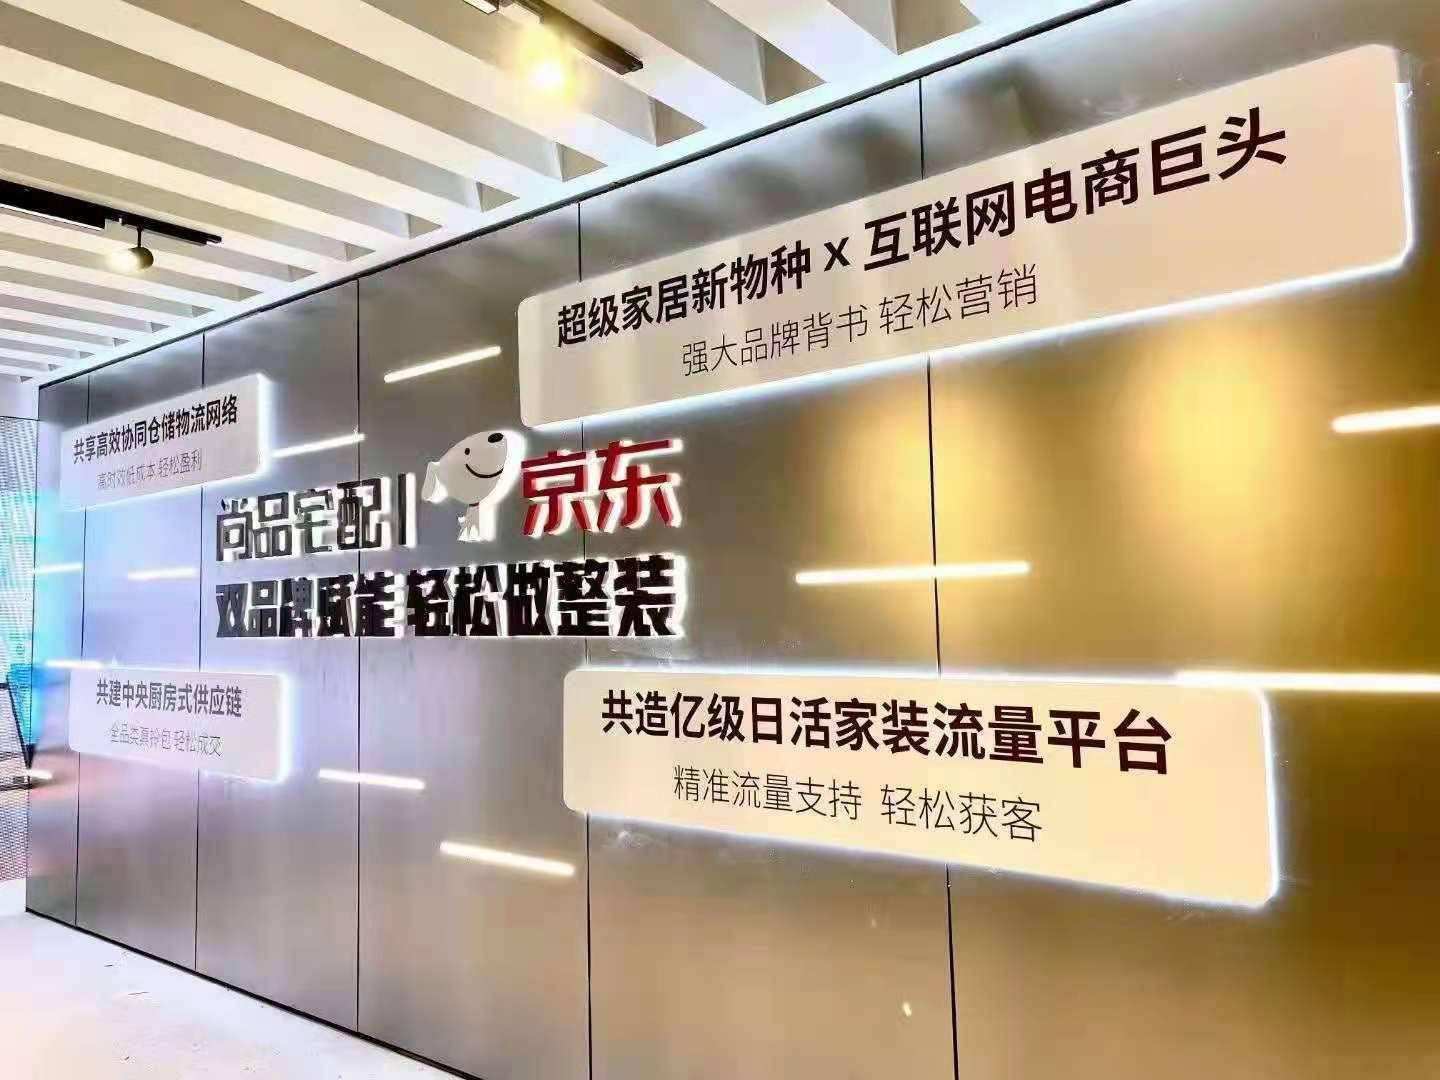 尚品宅配與北京京東終止定增，擬重新申報